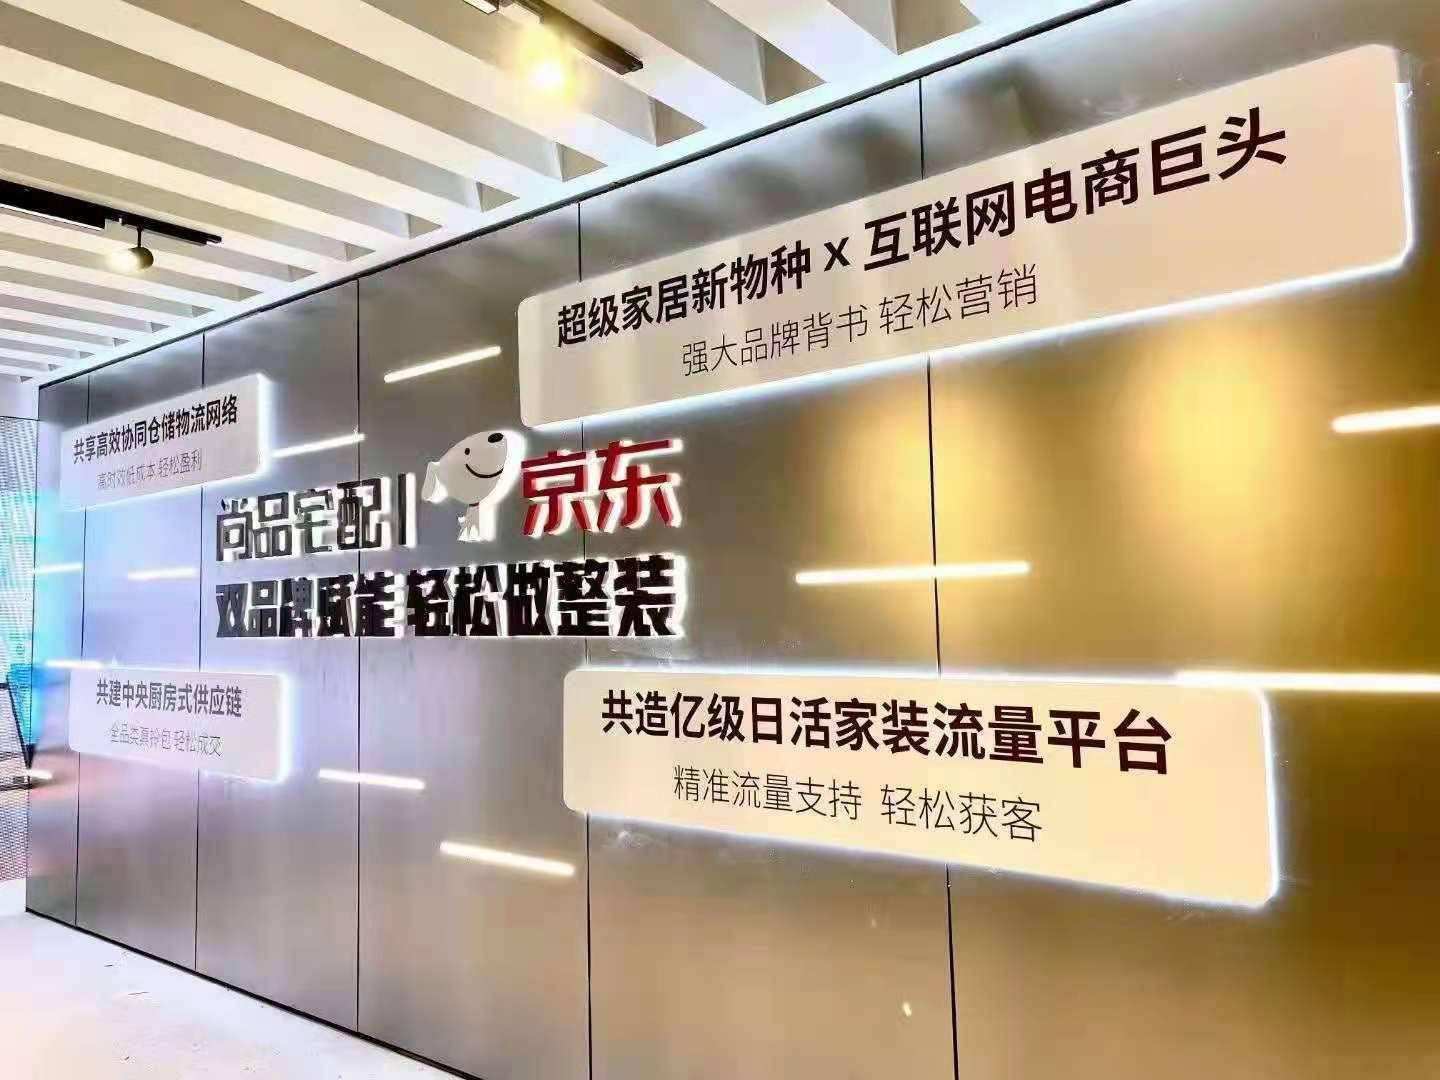 尚品宅配與北京京東終止定增，擬重新申報